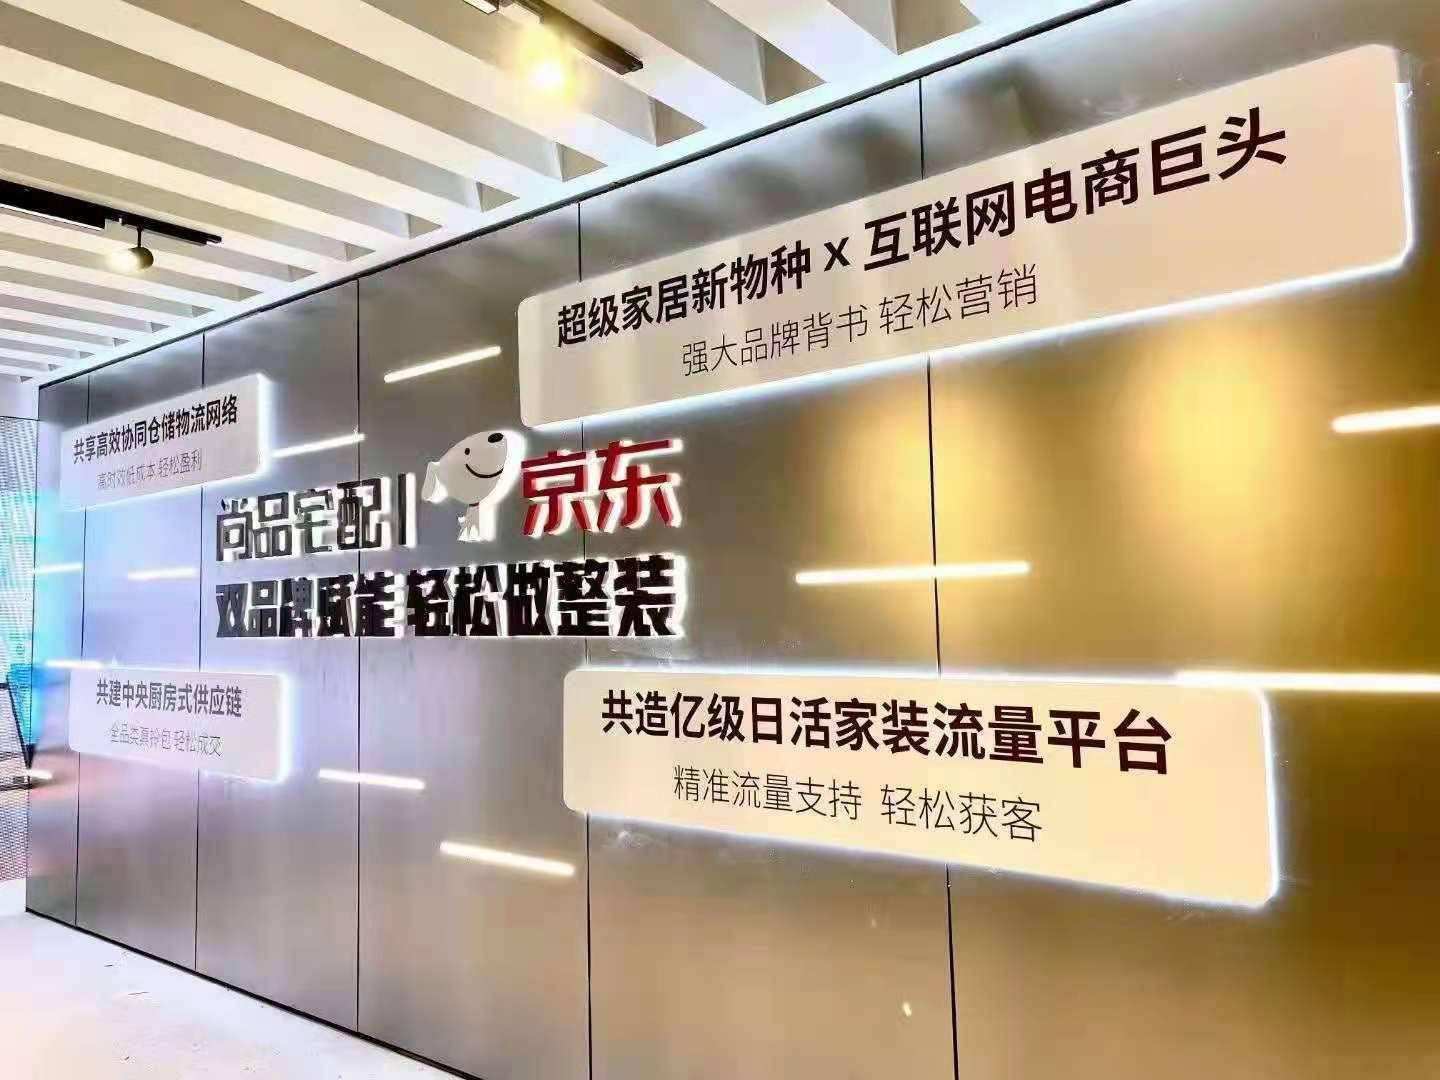 尚品宅配與北京京東終止定增，擬重新申報